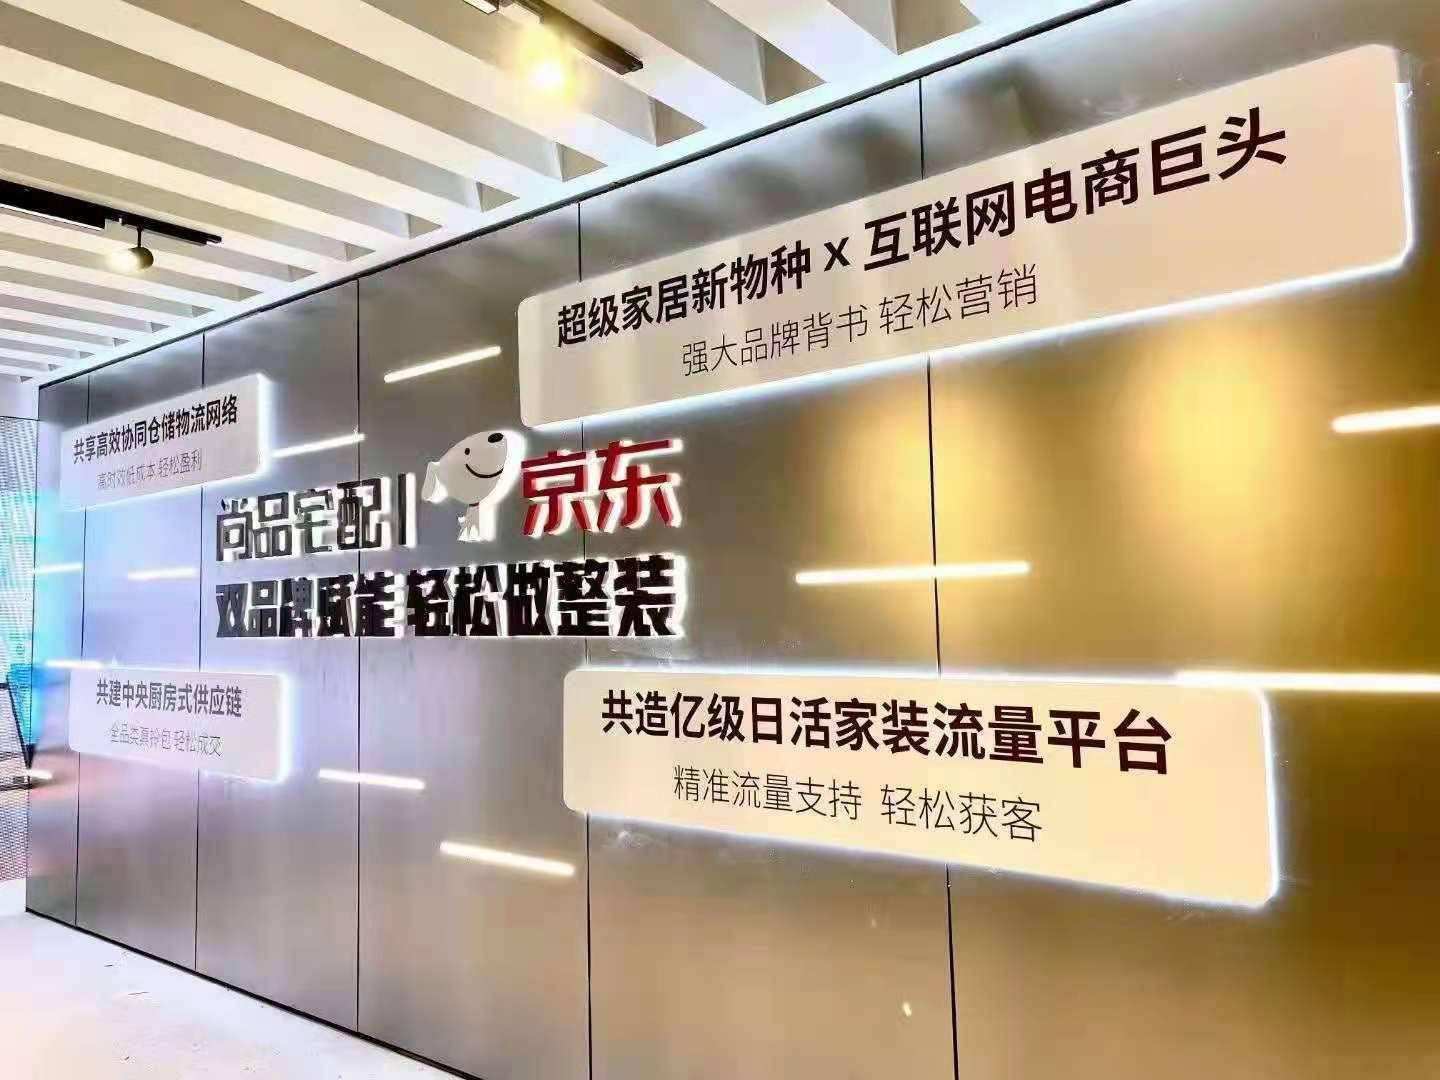 尚品宅配與北京京東終止定增，擬重新申報